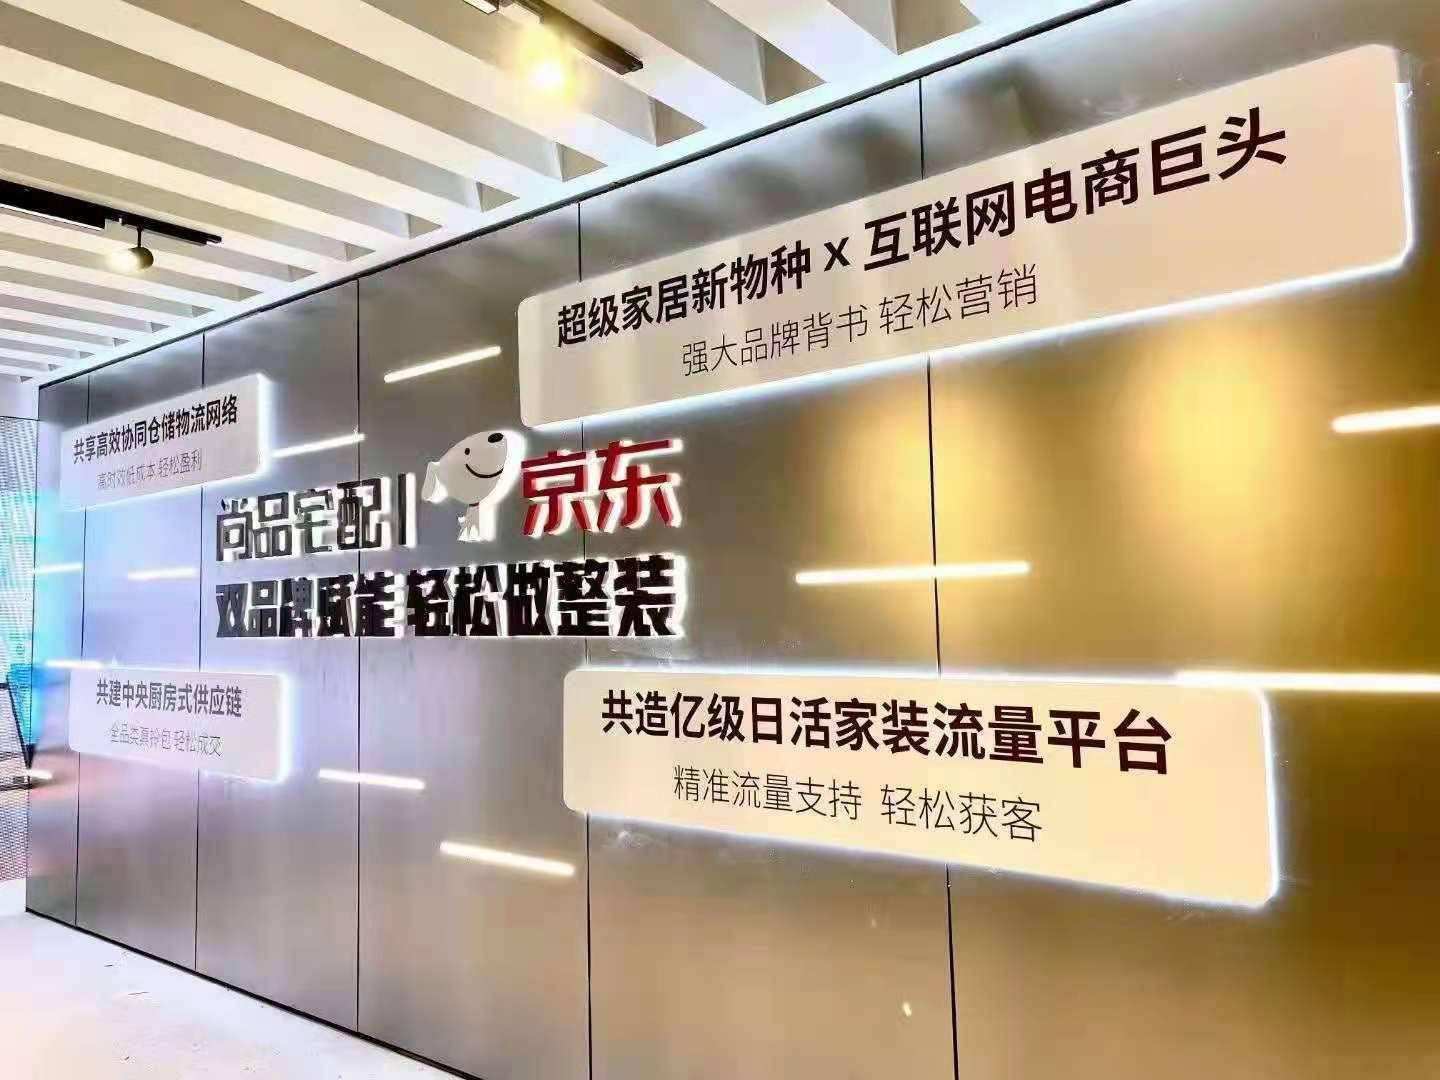 尚品宅配與北京京東終止定增，擬重新申報